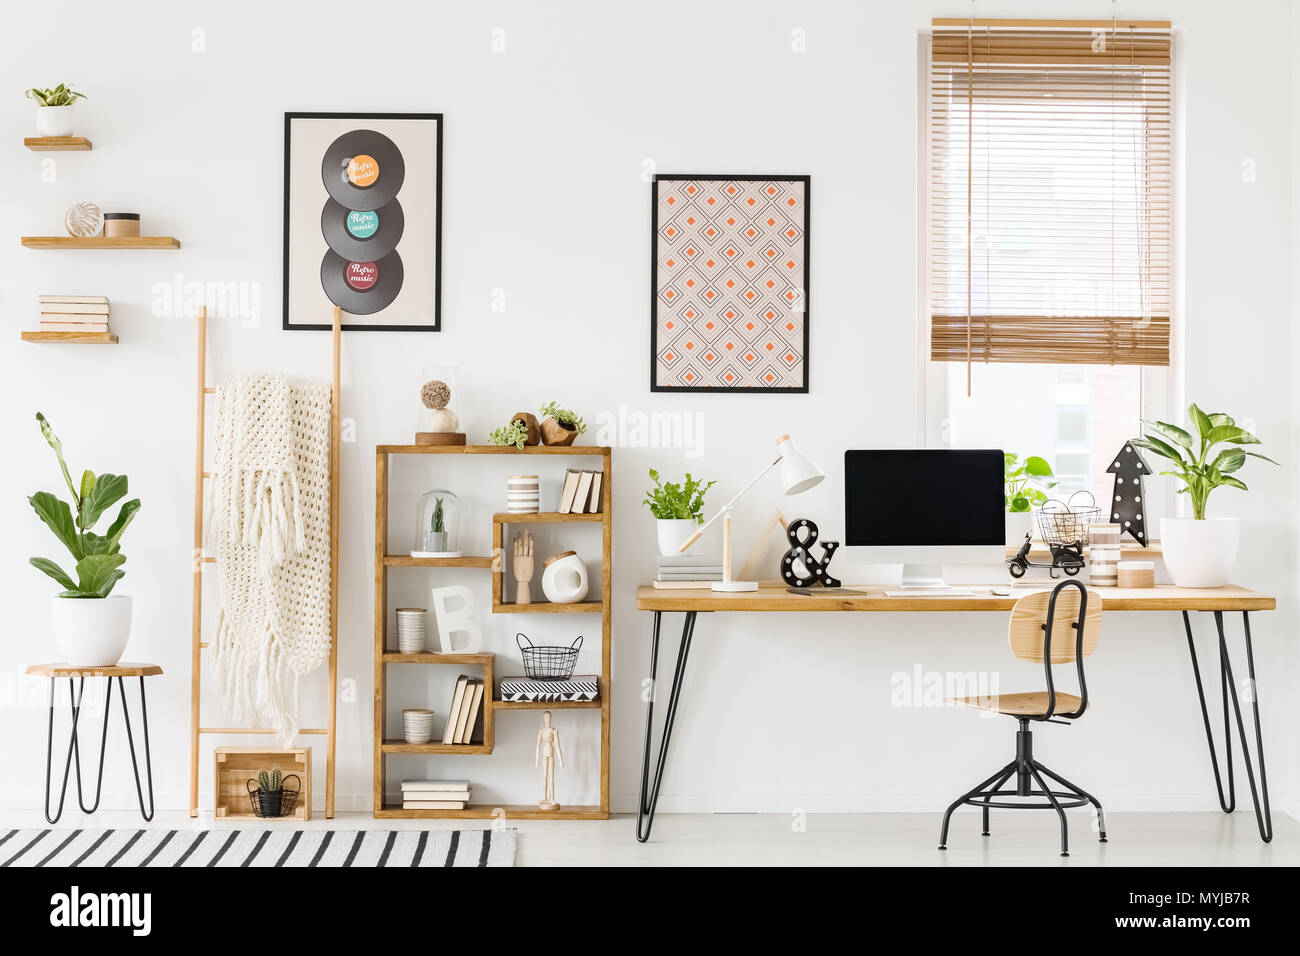 Foto reale di un luogo di lavoro interno con un computer su un tavolo accanto a una sedia e un ripiano con ornamenti, poster su una parete e una finestra con persiane Foto Stock